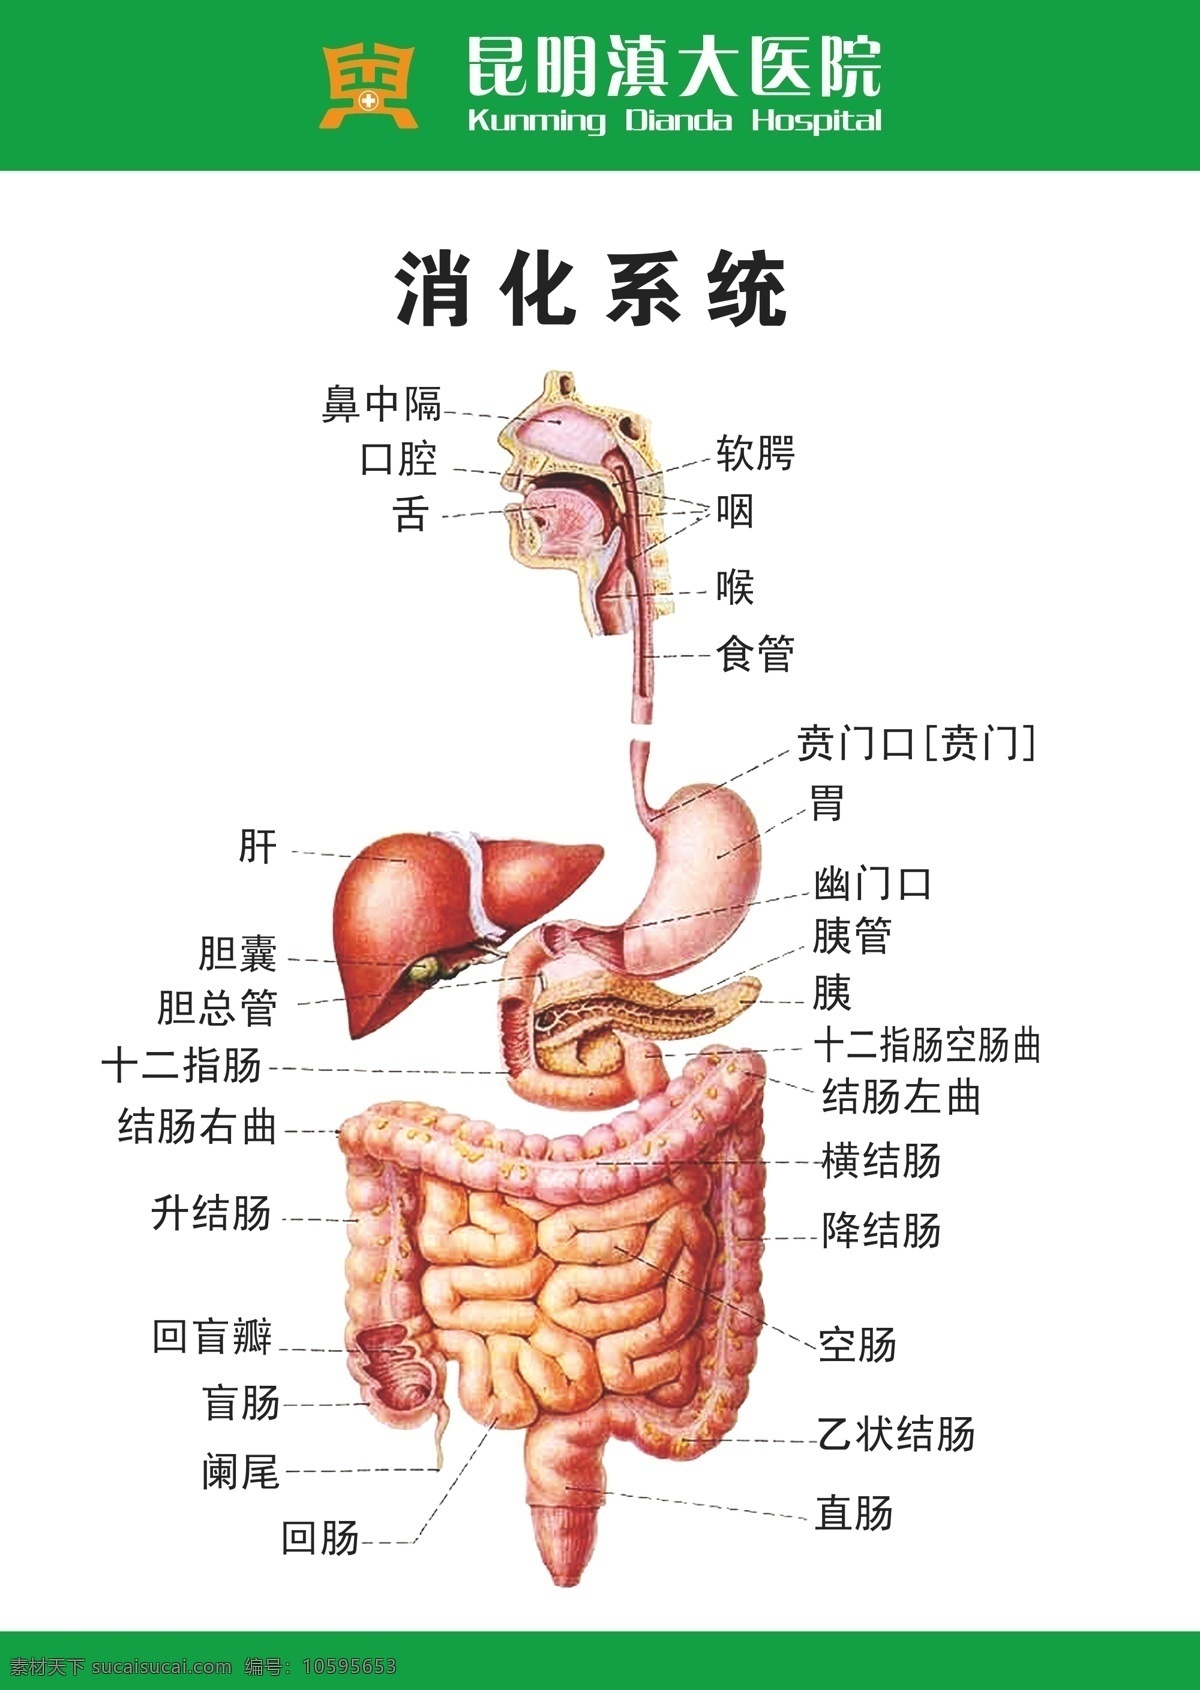 滇 大 医院 肠胃 矢量 模板下载 滇大医院肠胃 消化系统模式 矢量设计 白色